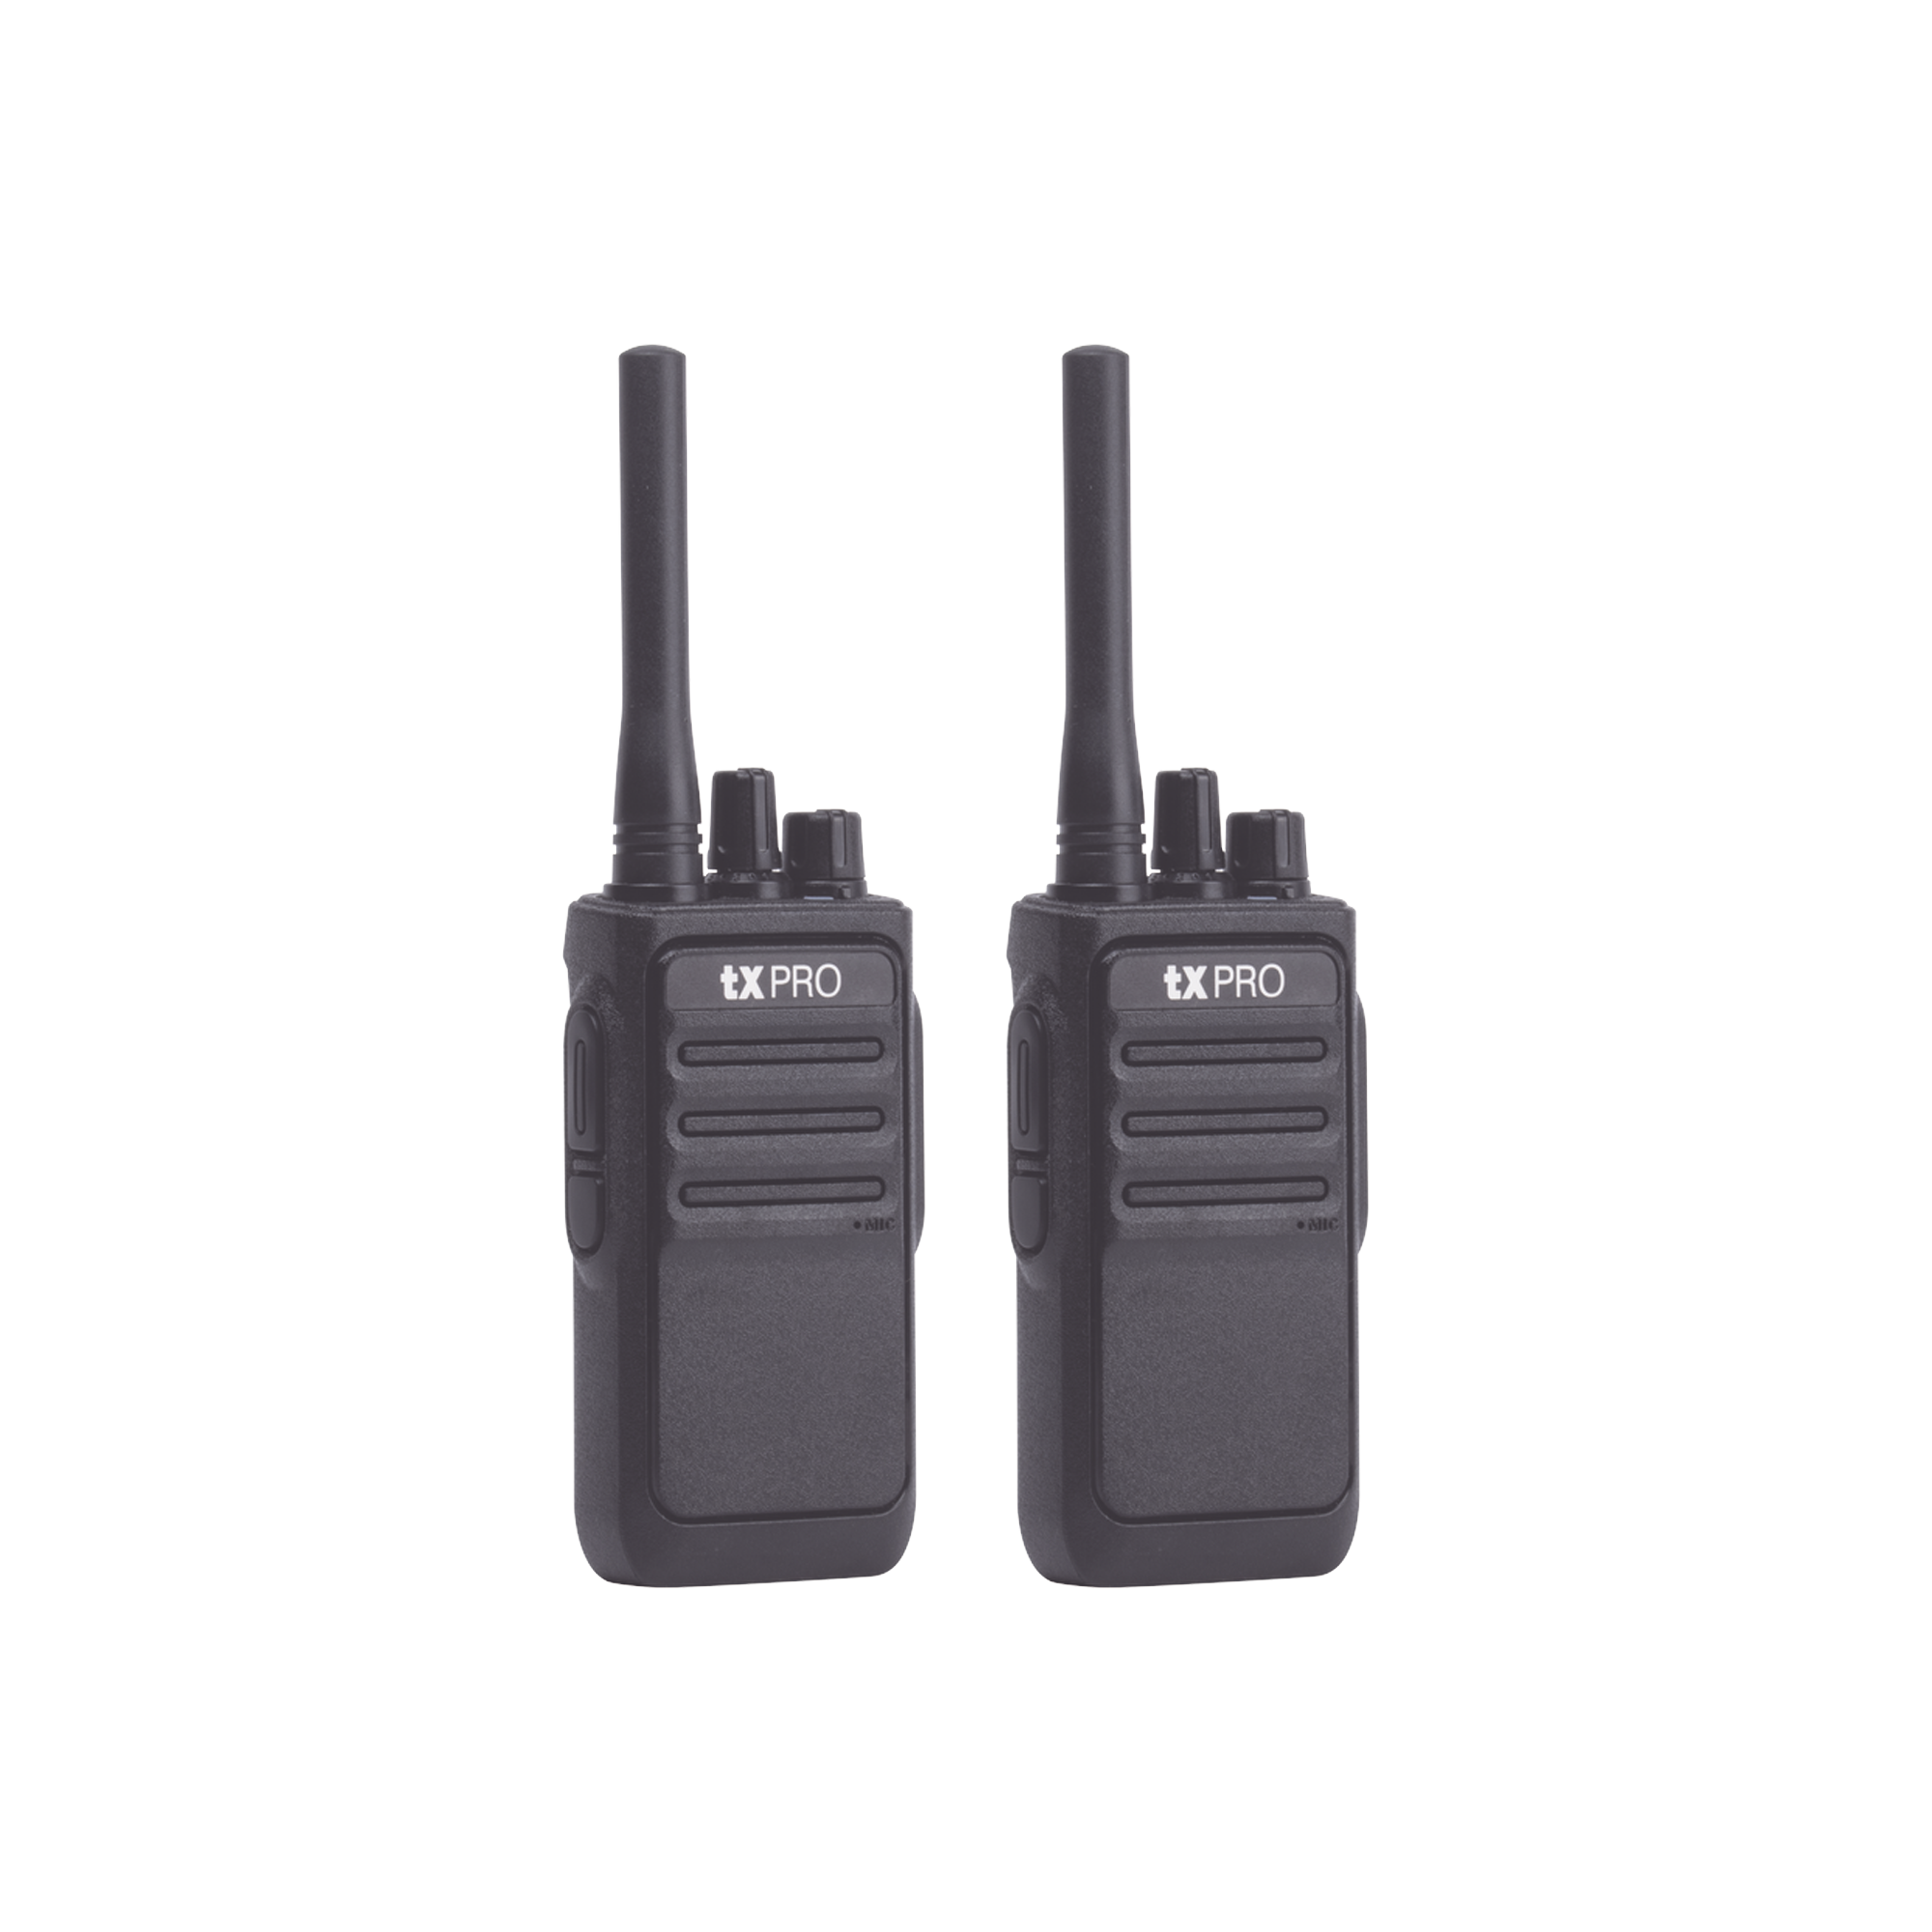 Paquete de 2 radios portátiles TX320 UHF 400-470 MHz, 16 canales, 2 Watts de potencia, SÚPER Eficientes.